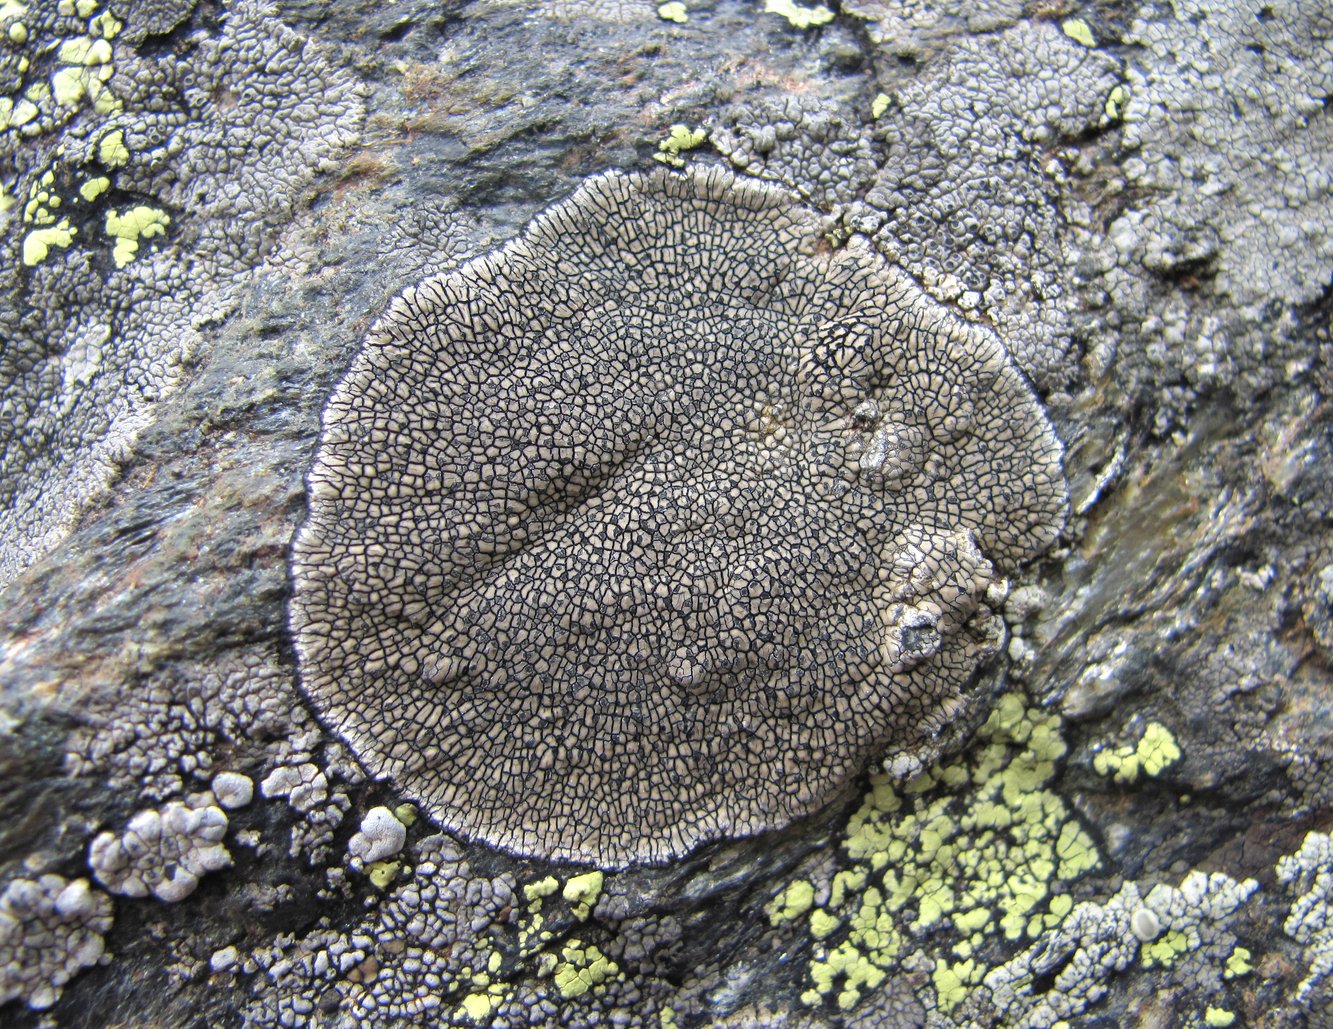 Image of genus Dimelaena specimen.